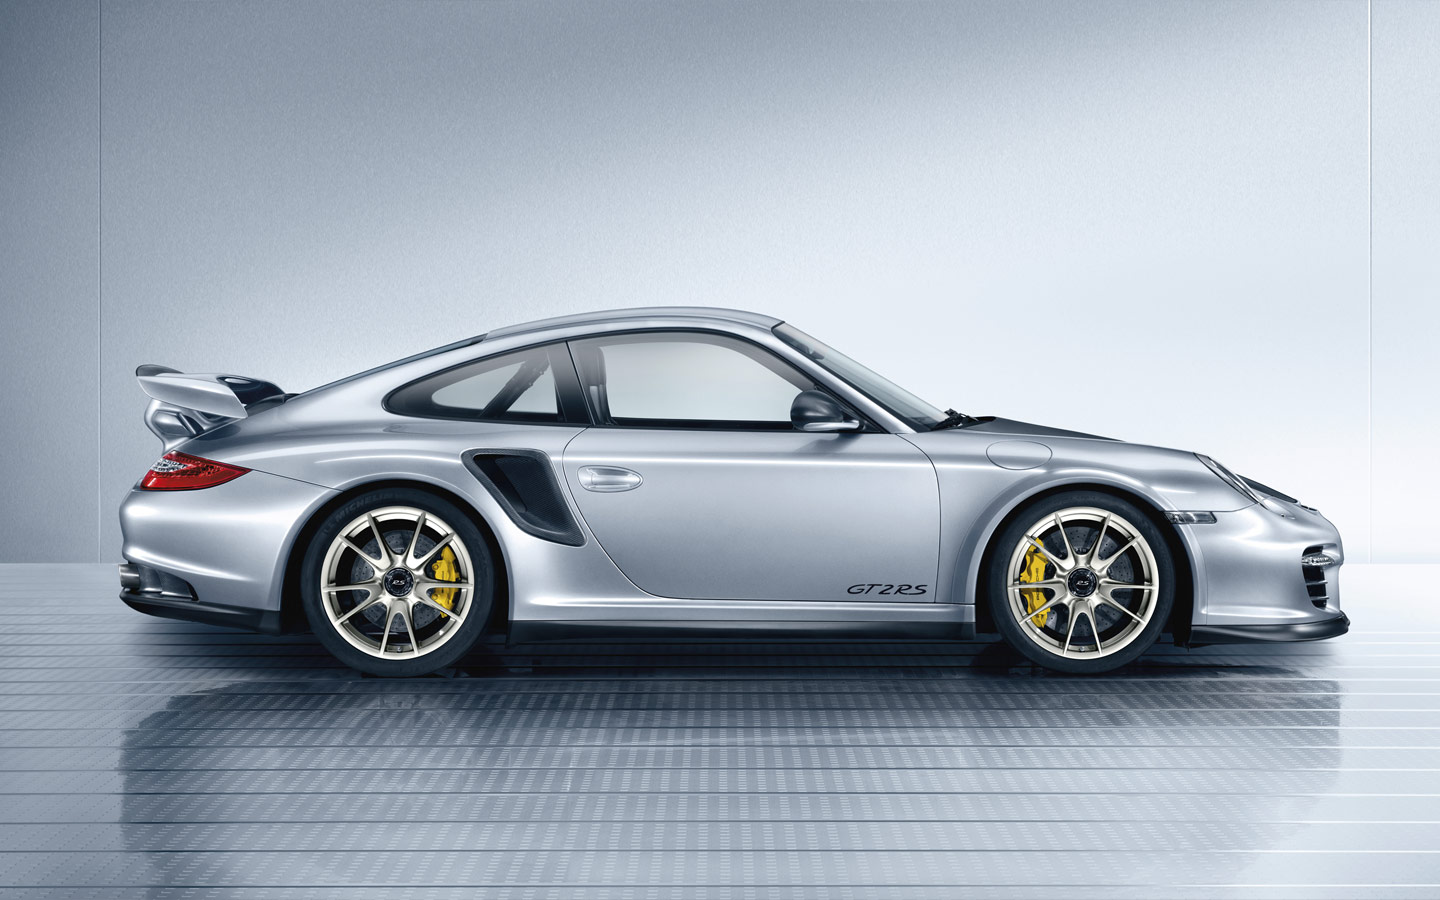 Porsche 911 GT2 Backgrounds on Wallpapers Vista